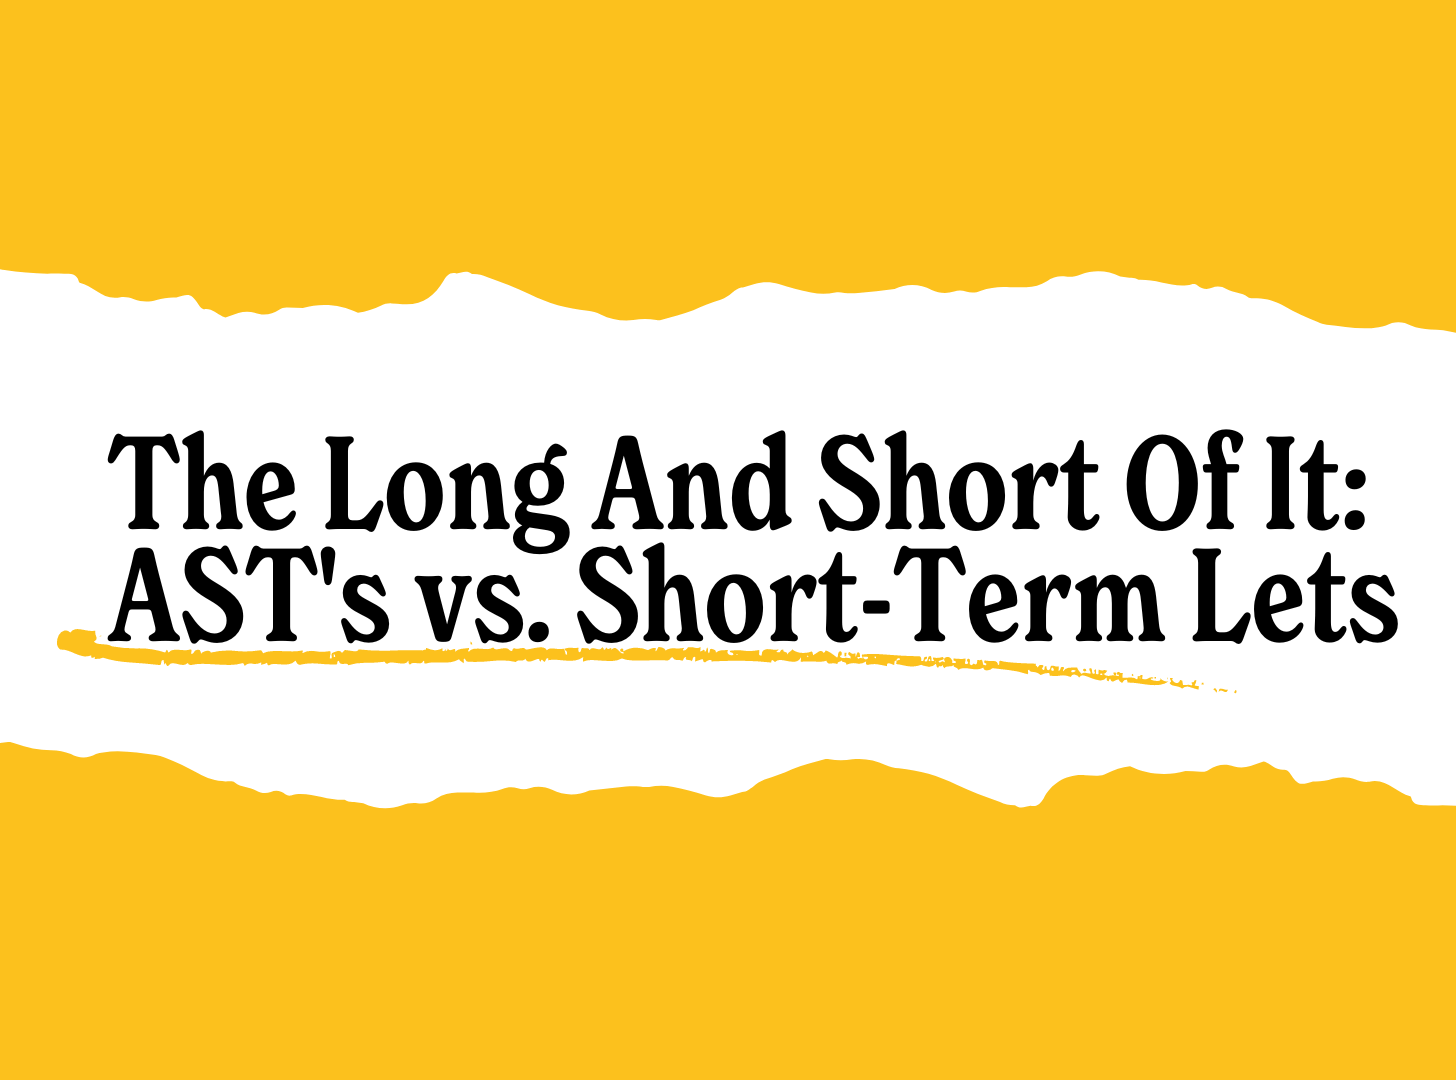 ast vs short-term lets